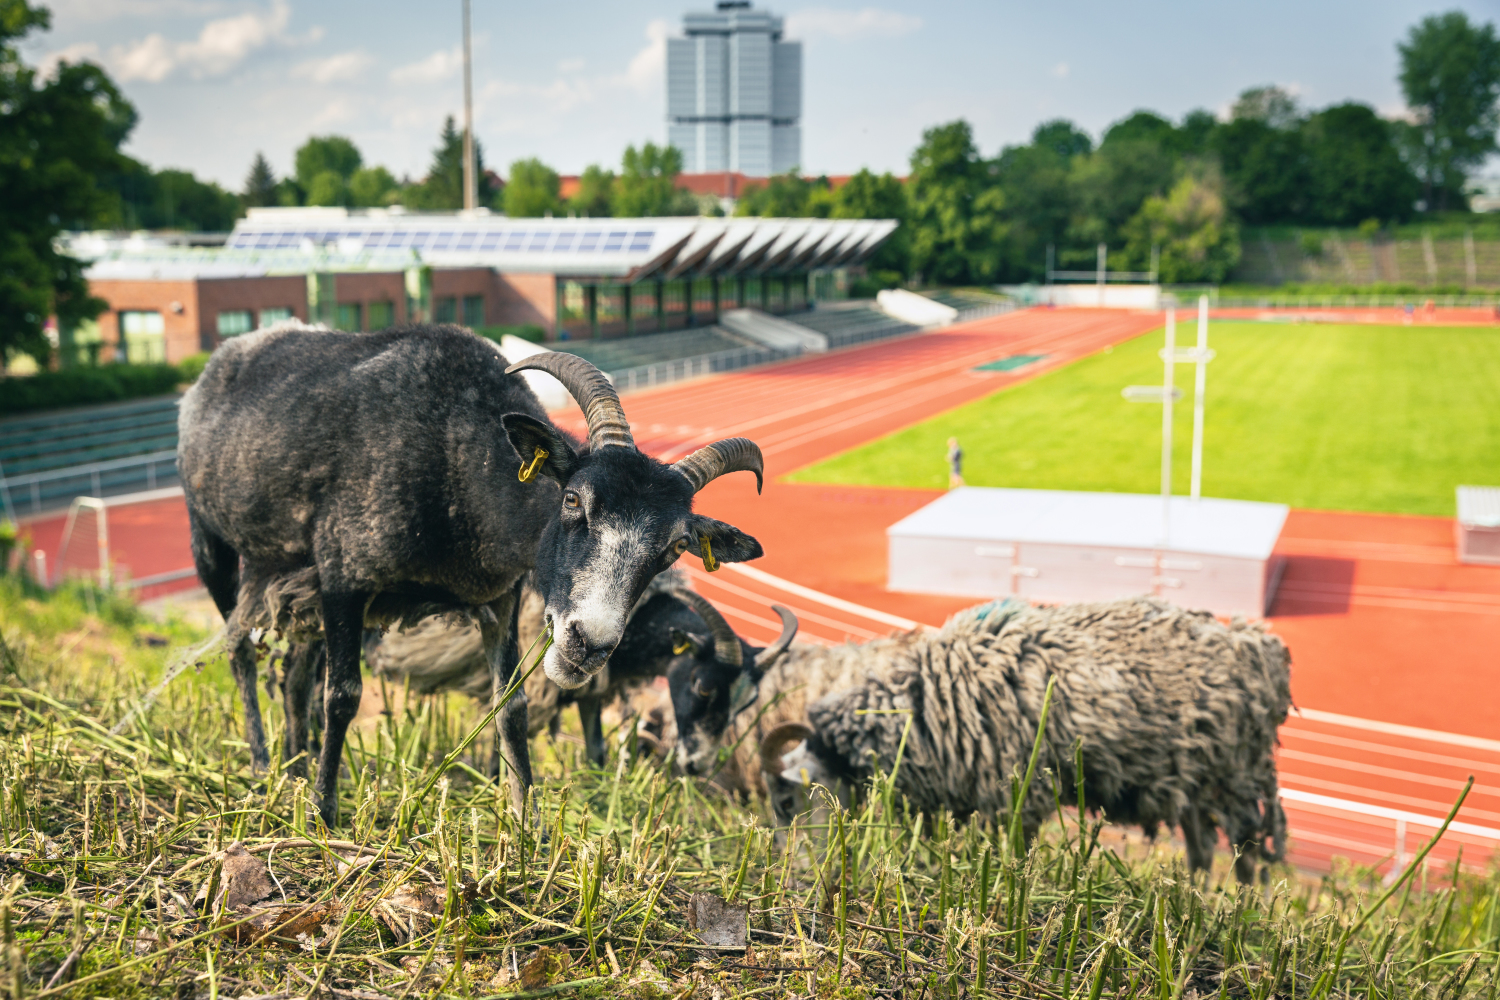 im Vordergrund drei fressende Schafe, im Hintergrund das Stadion Wilmersdorf 